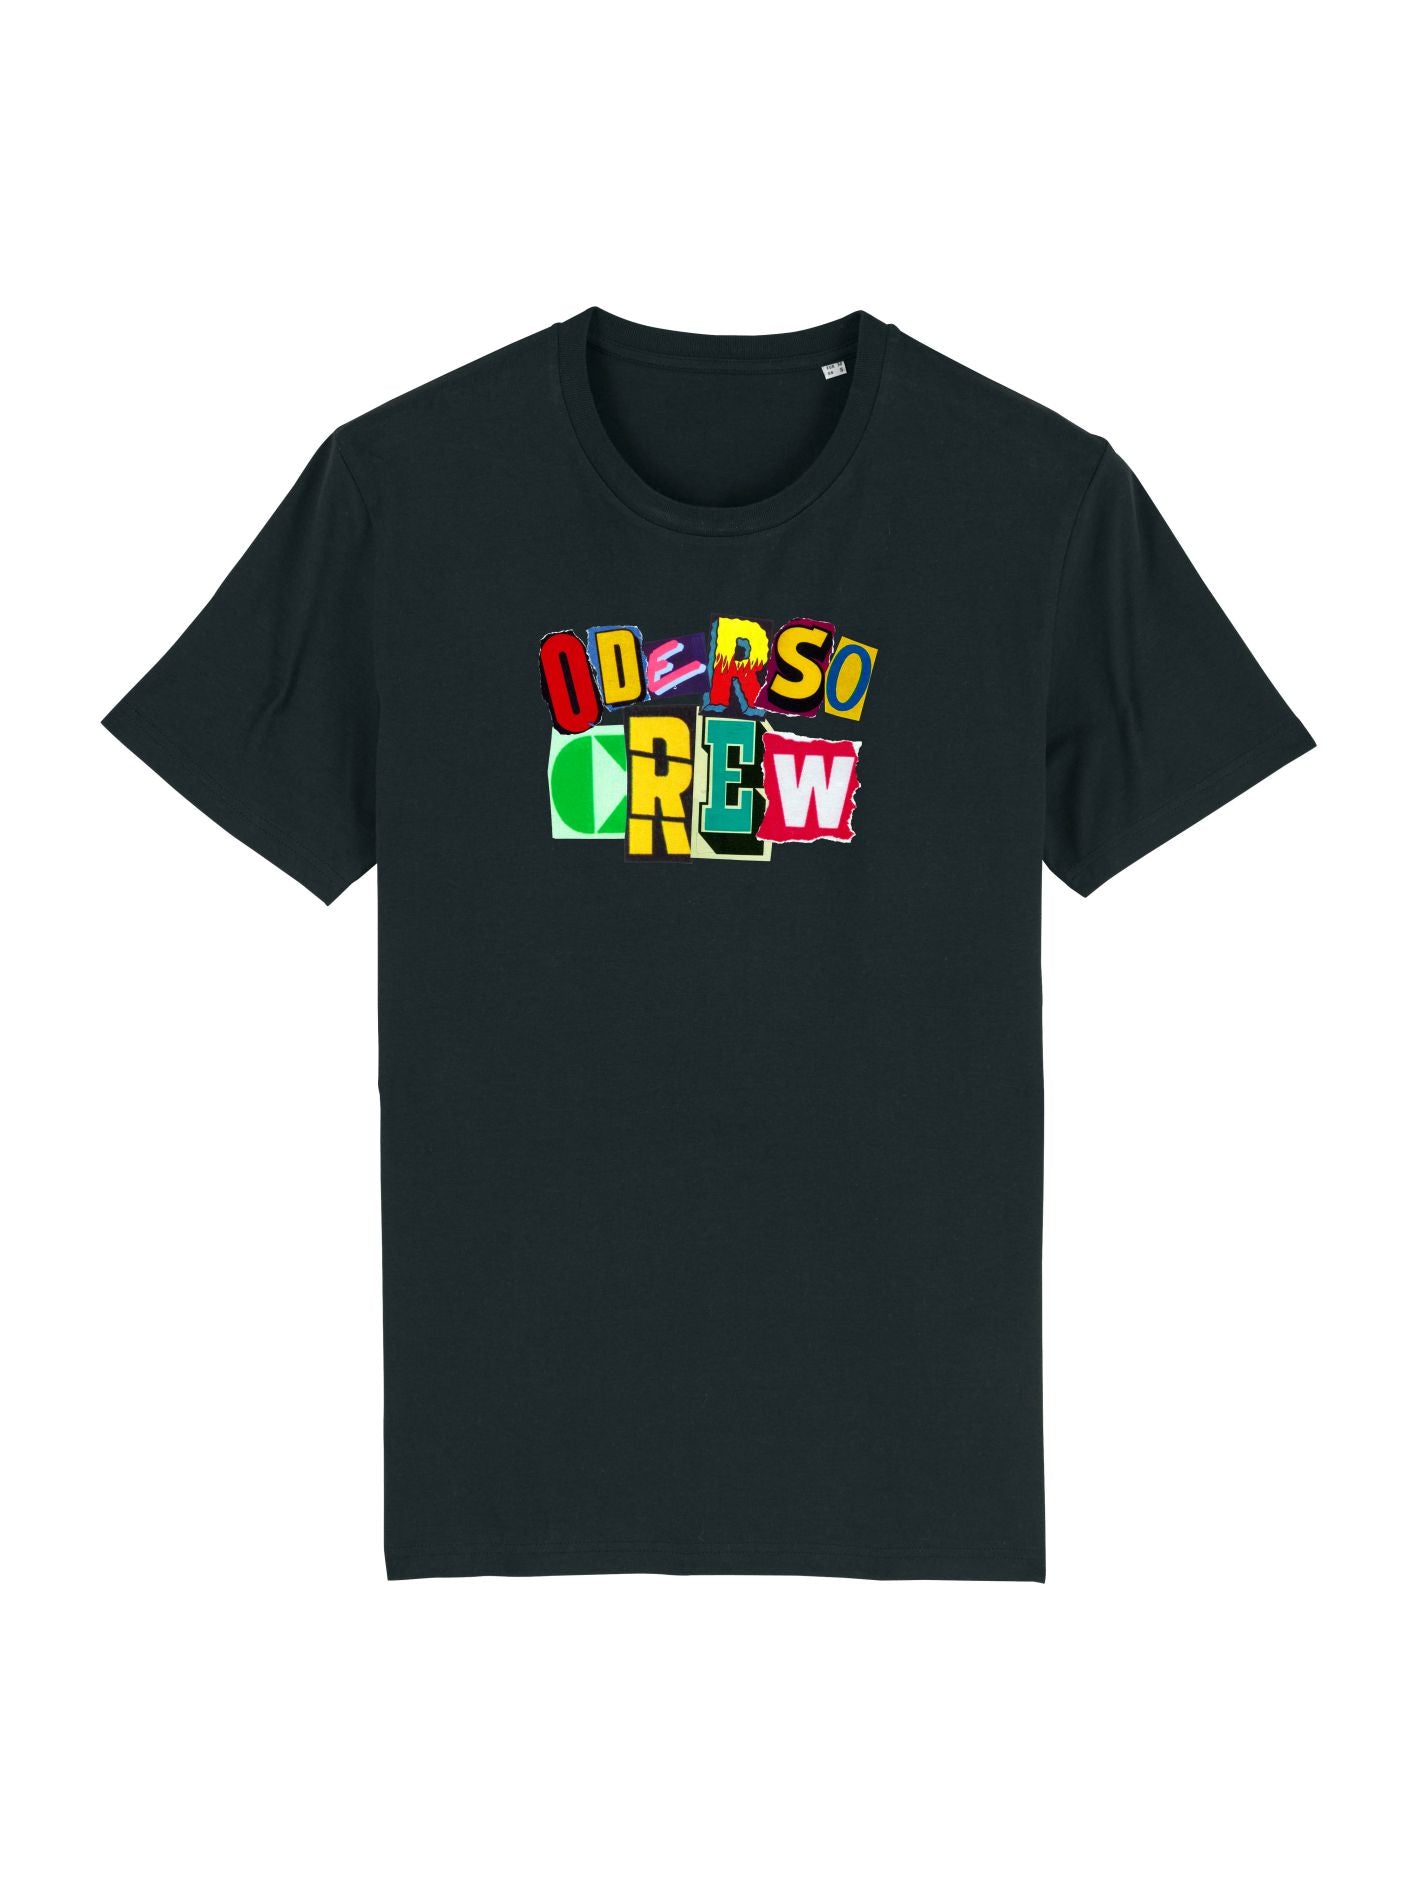 OderSoCrew - Shirt